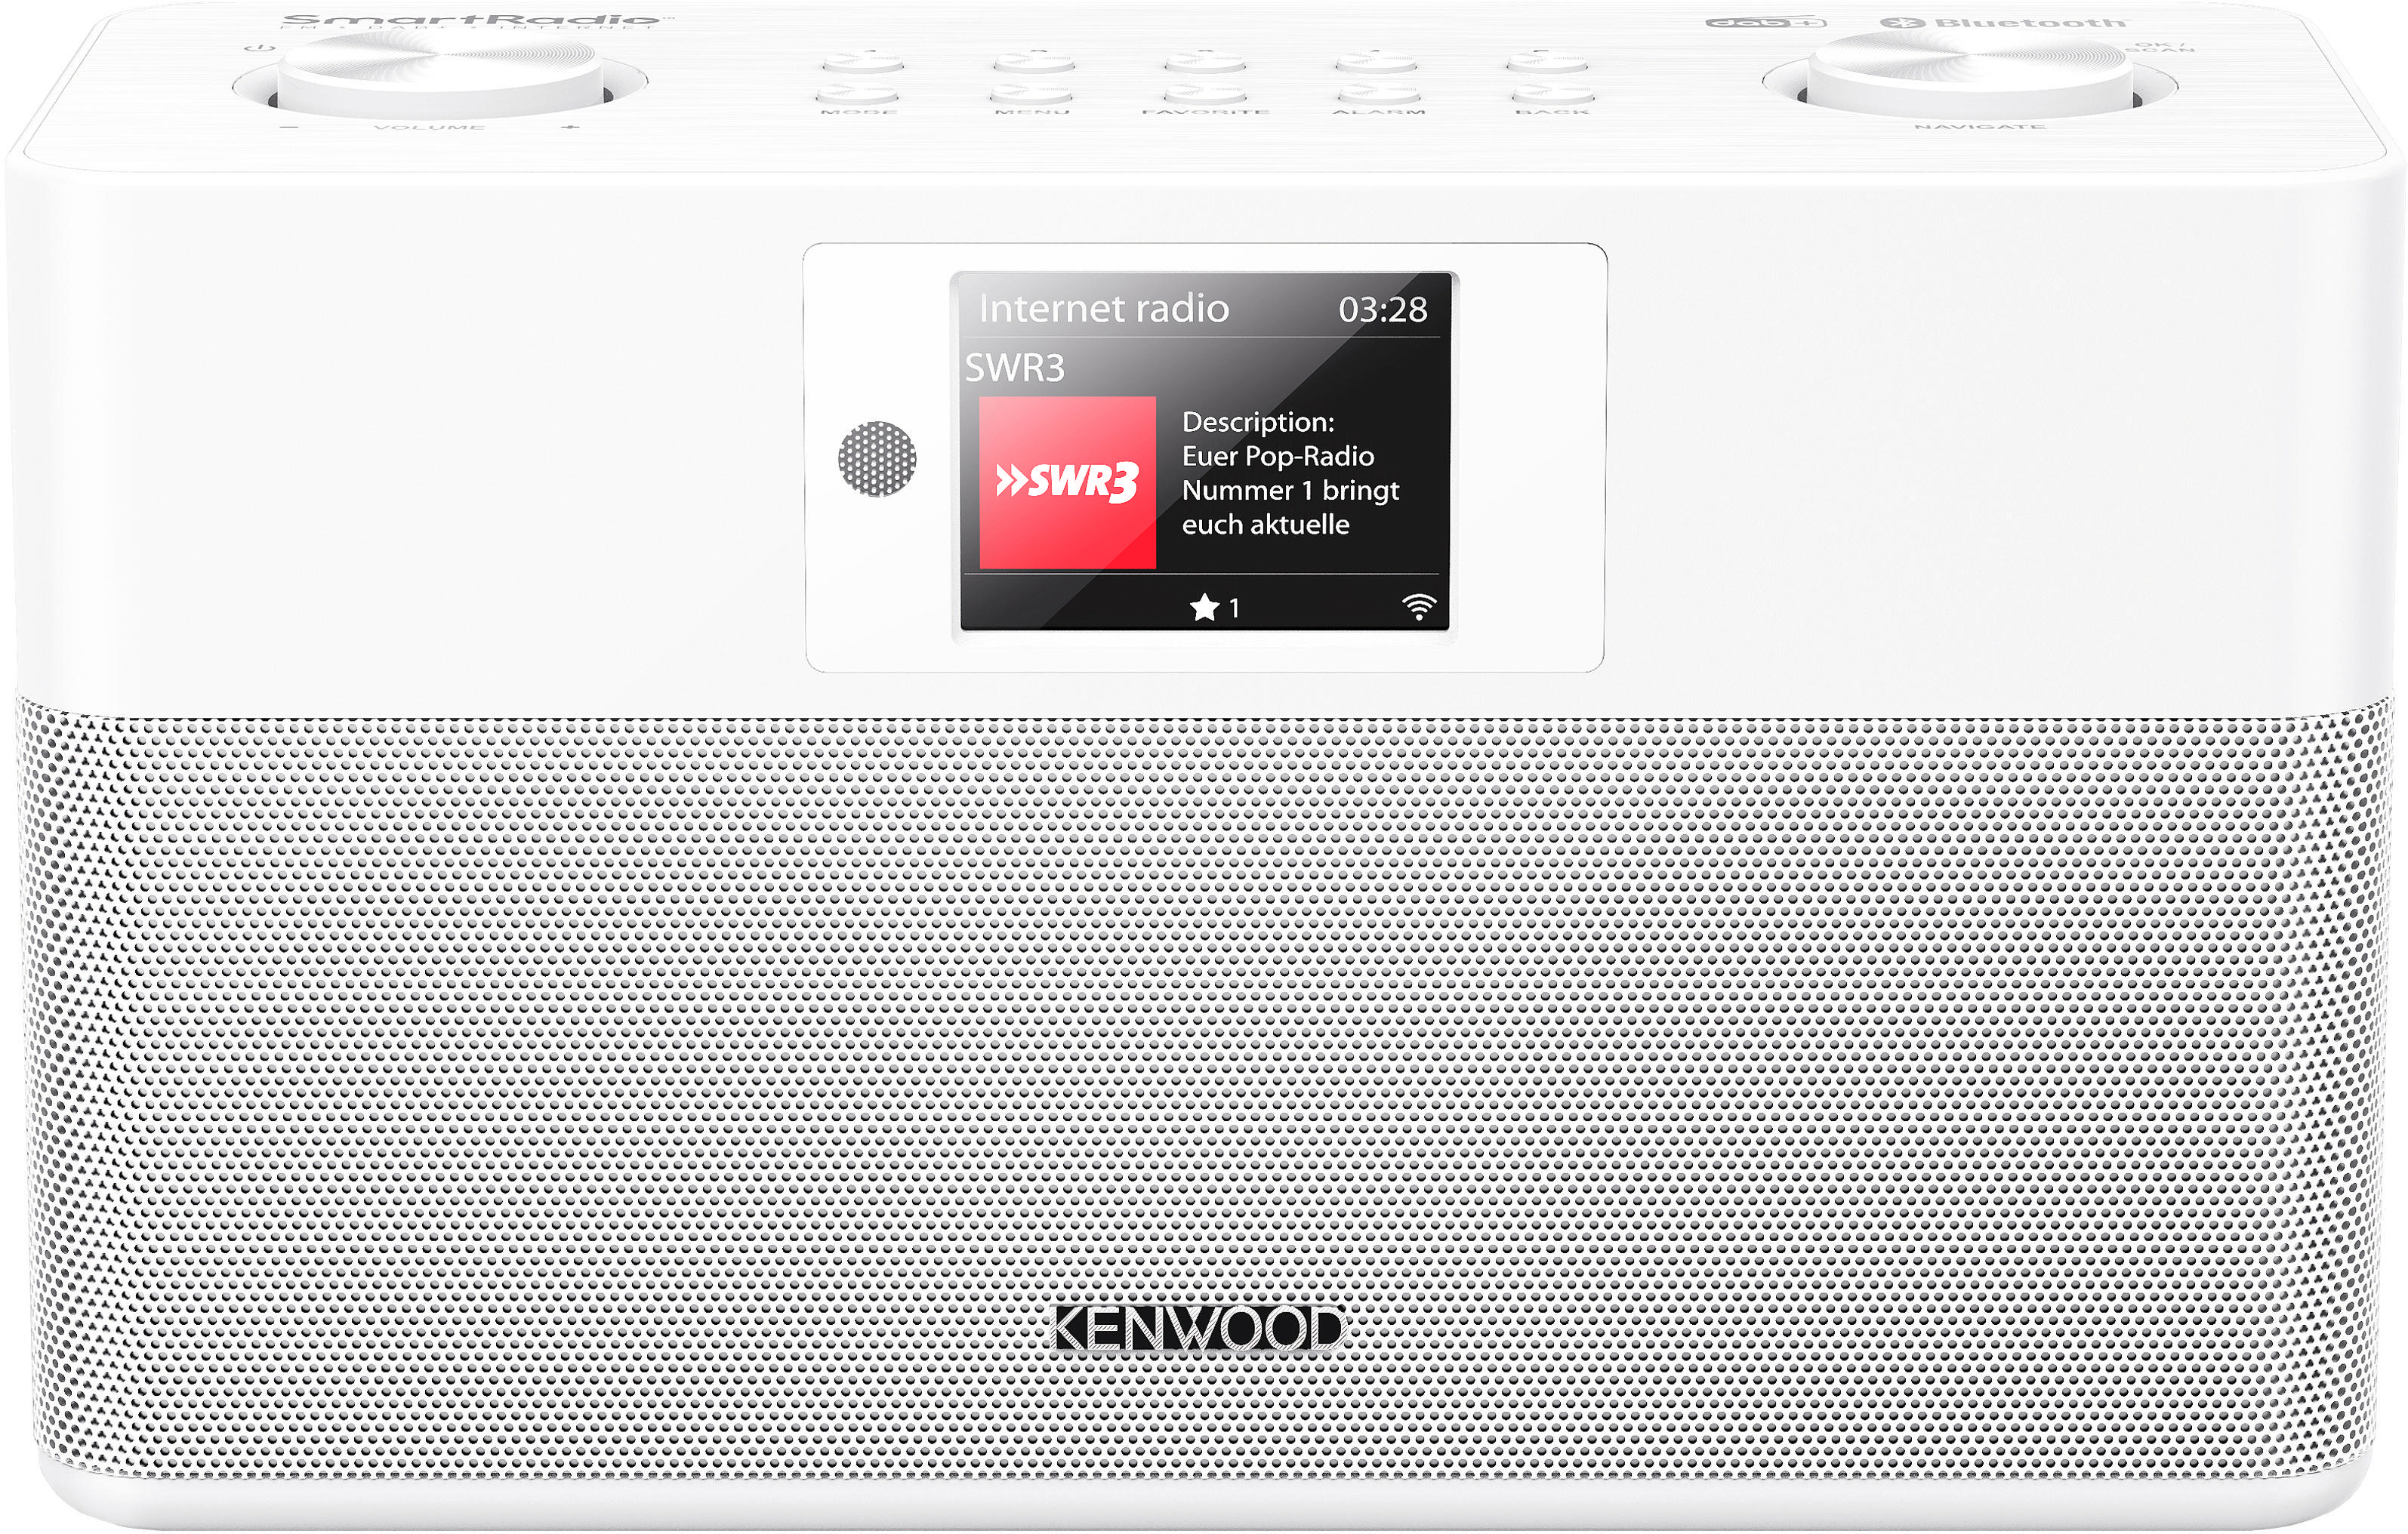 KENWOOD CR-ST100S-W Weiß Bluetooth, FM, Internetradio, Radio, DAB+, Internet